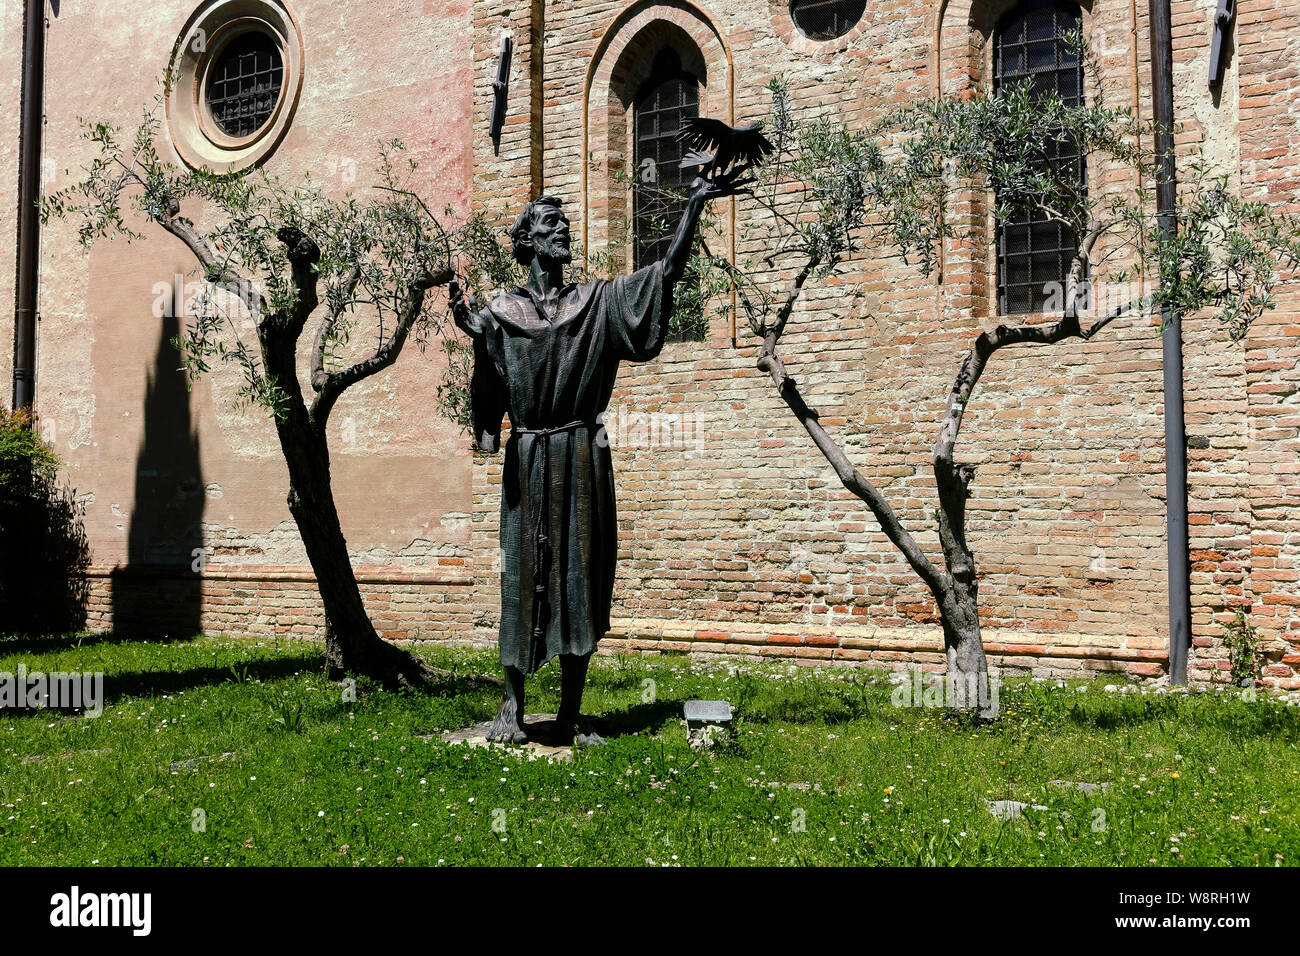 Bronzestatue des heiligen Franz von Assisi, von Roberto Cremesini Bildhauer. Kirche Kloster San Francesco.Treviso, Venetien, Italien, Europa, EU. Stockfoto